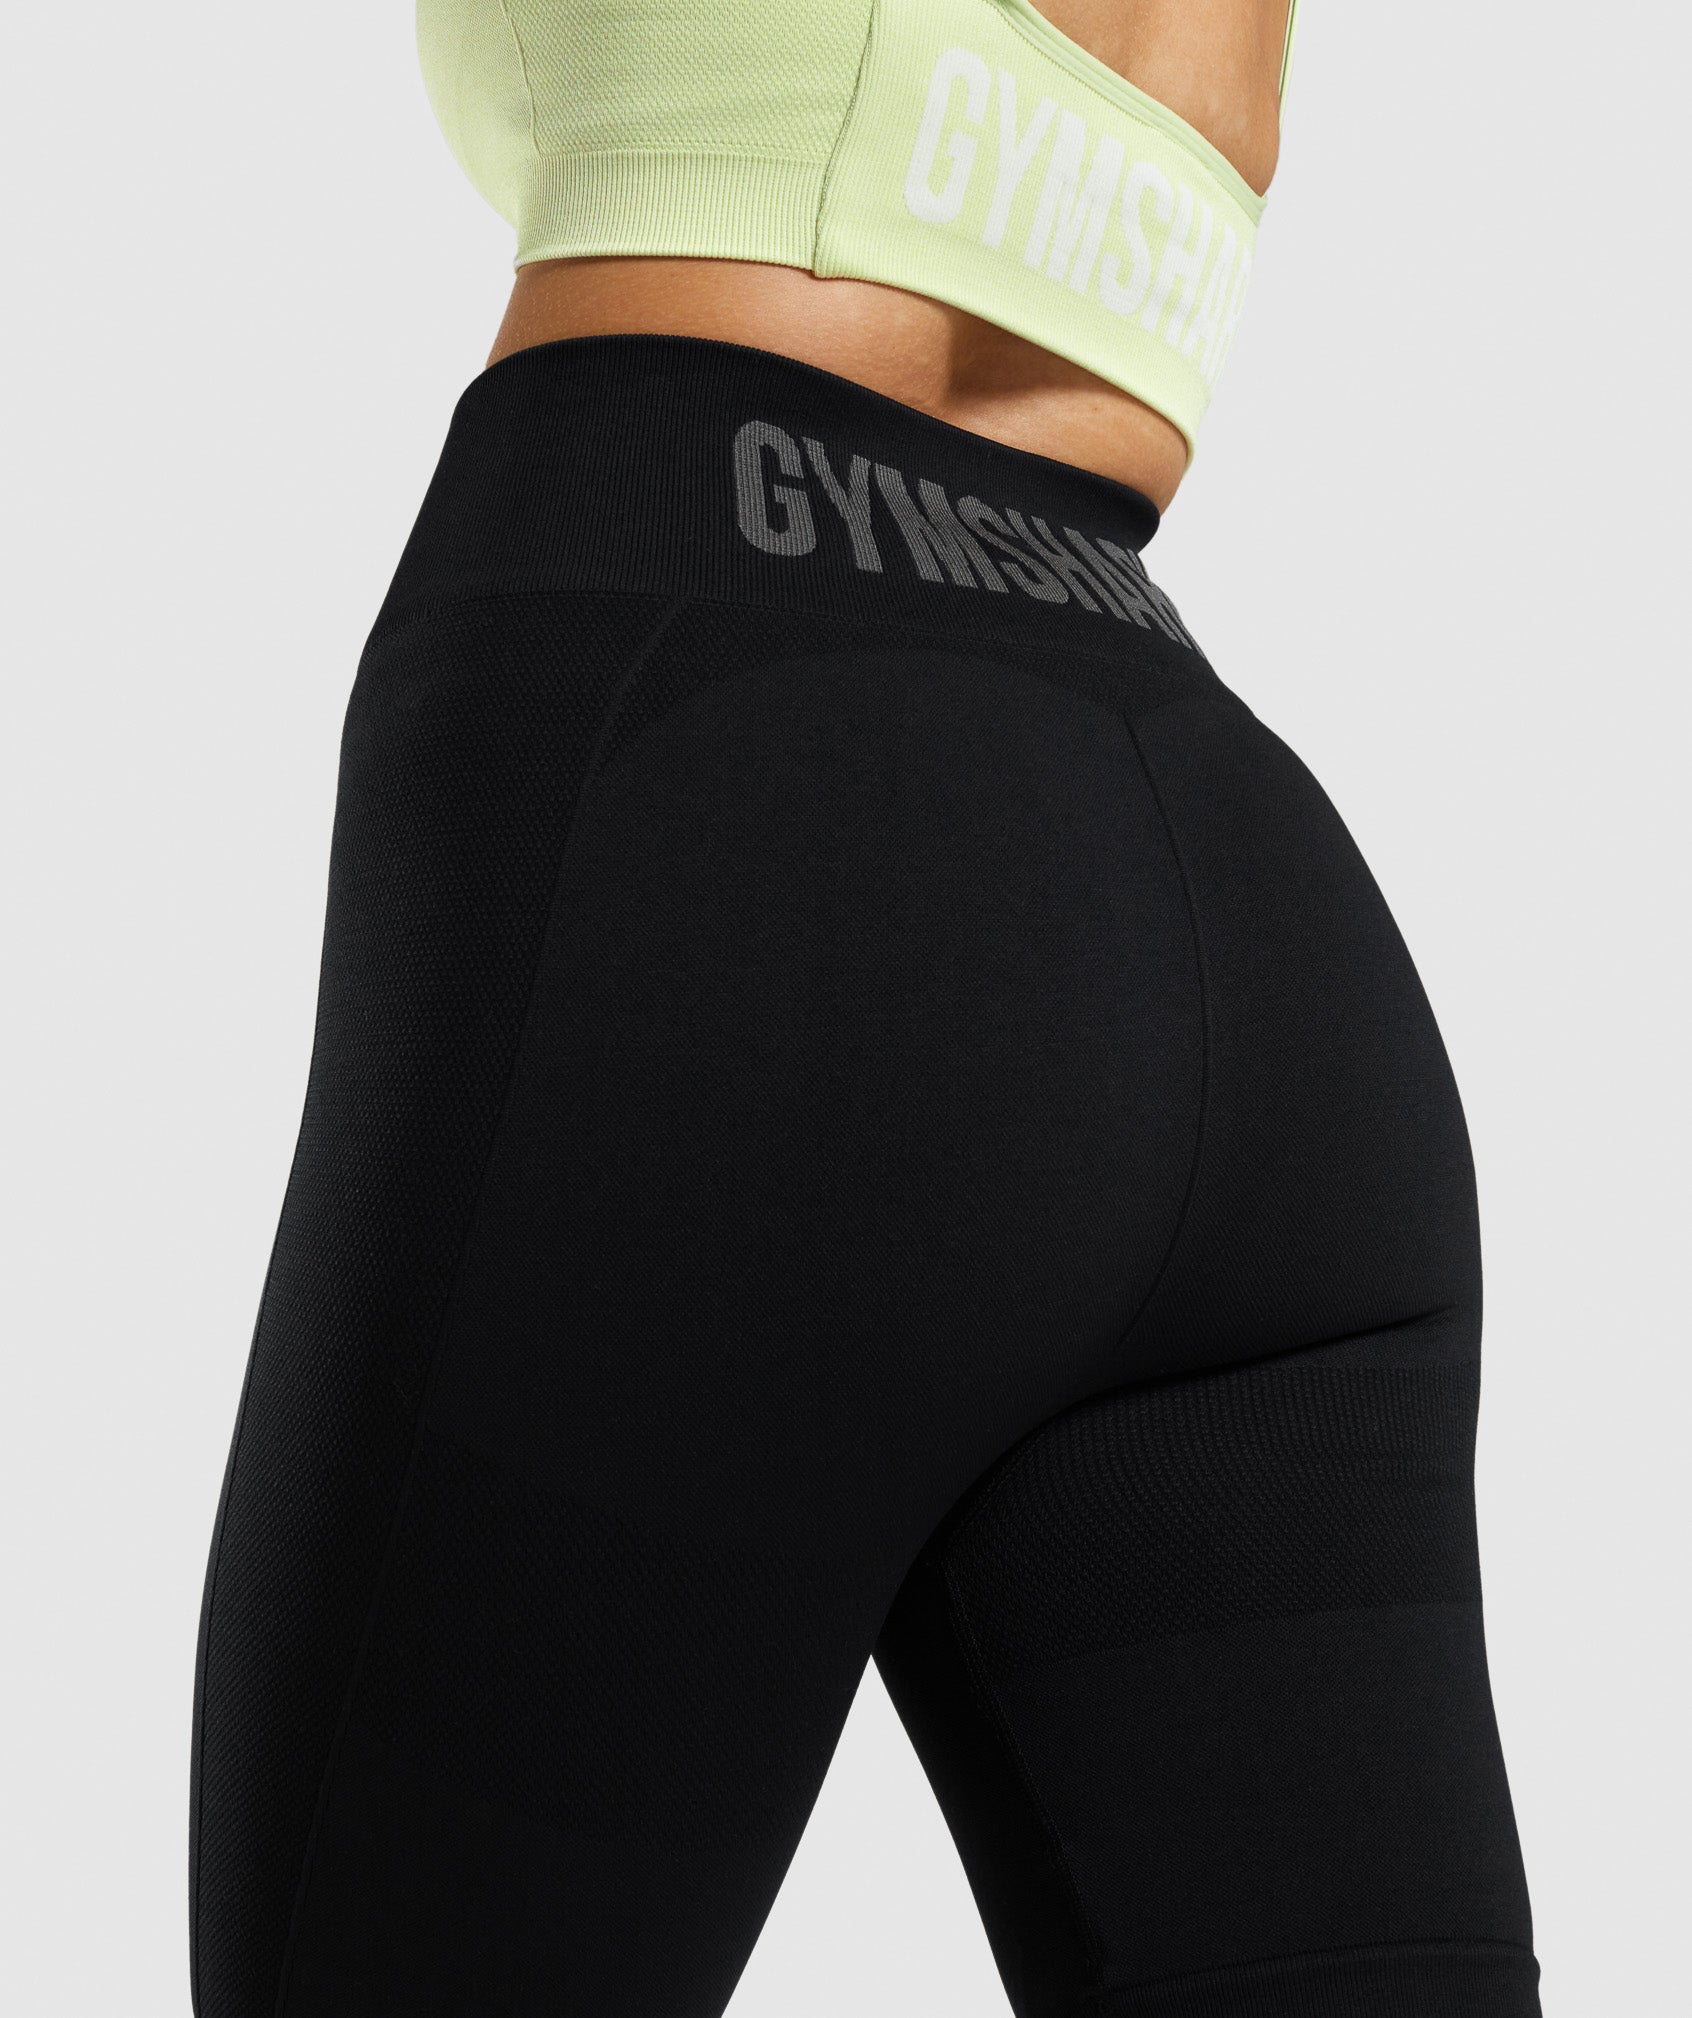 Gymshark Flex Cycling Shorts - Black/Charcoal